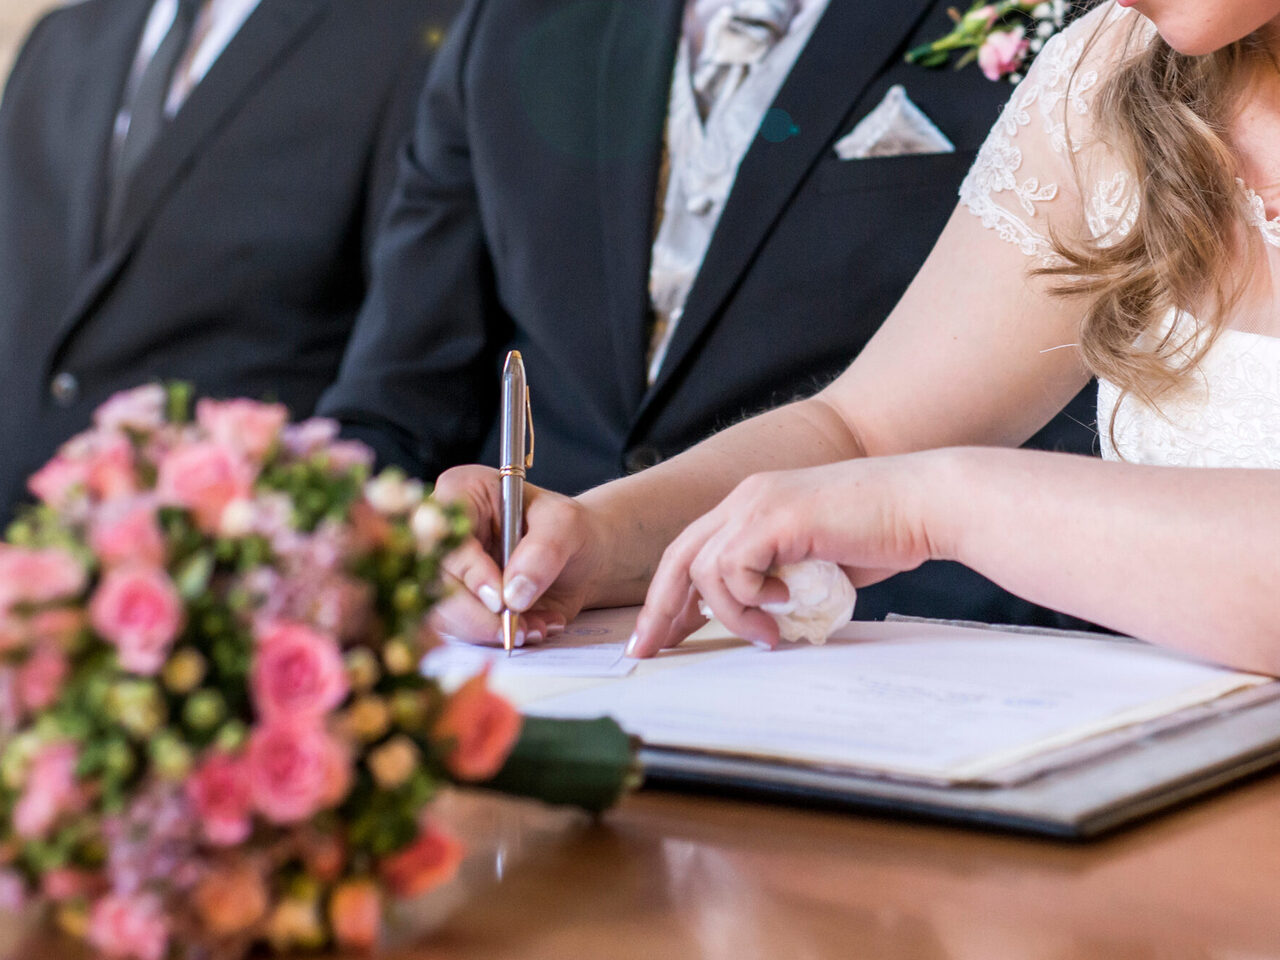 Heirat elegante Braut unterzeichnen Register, Feder und offizielles Dokument Hochzeitspaa